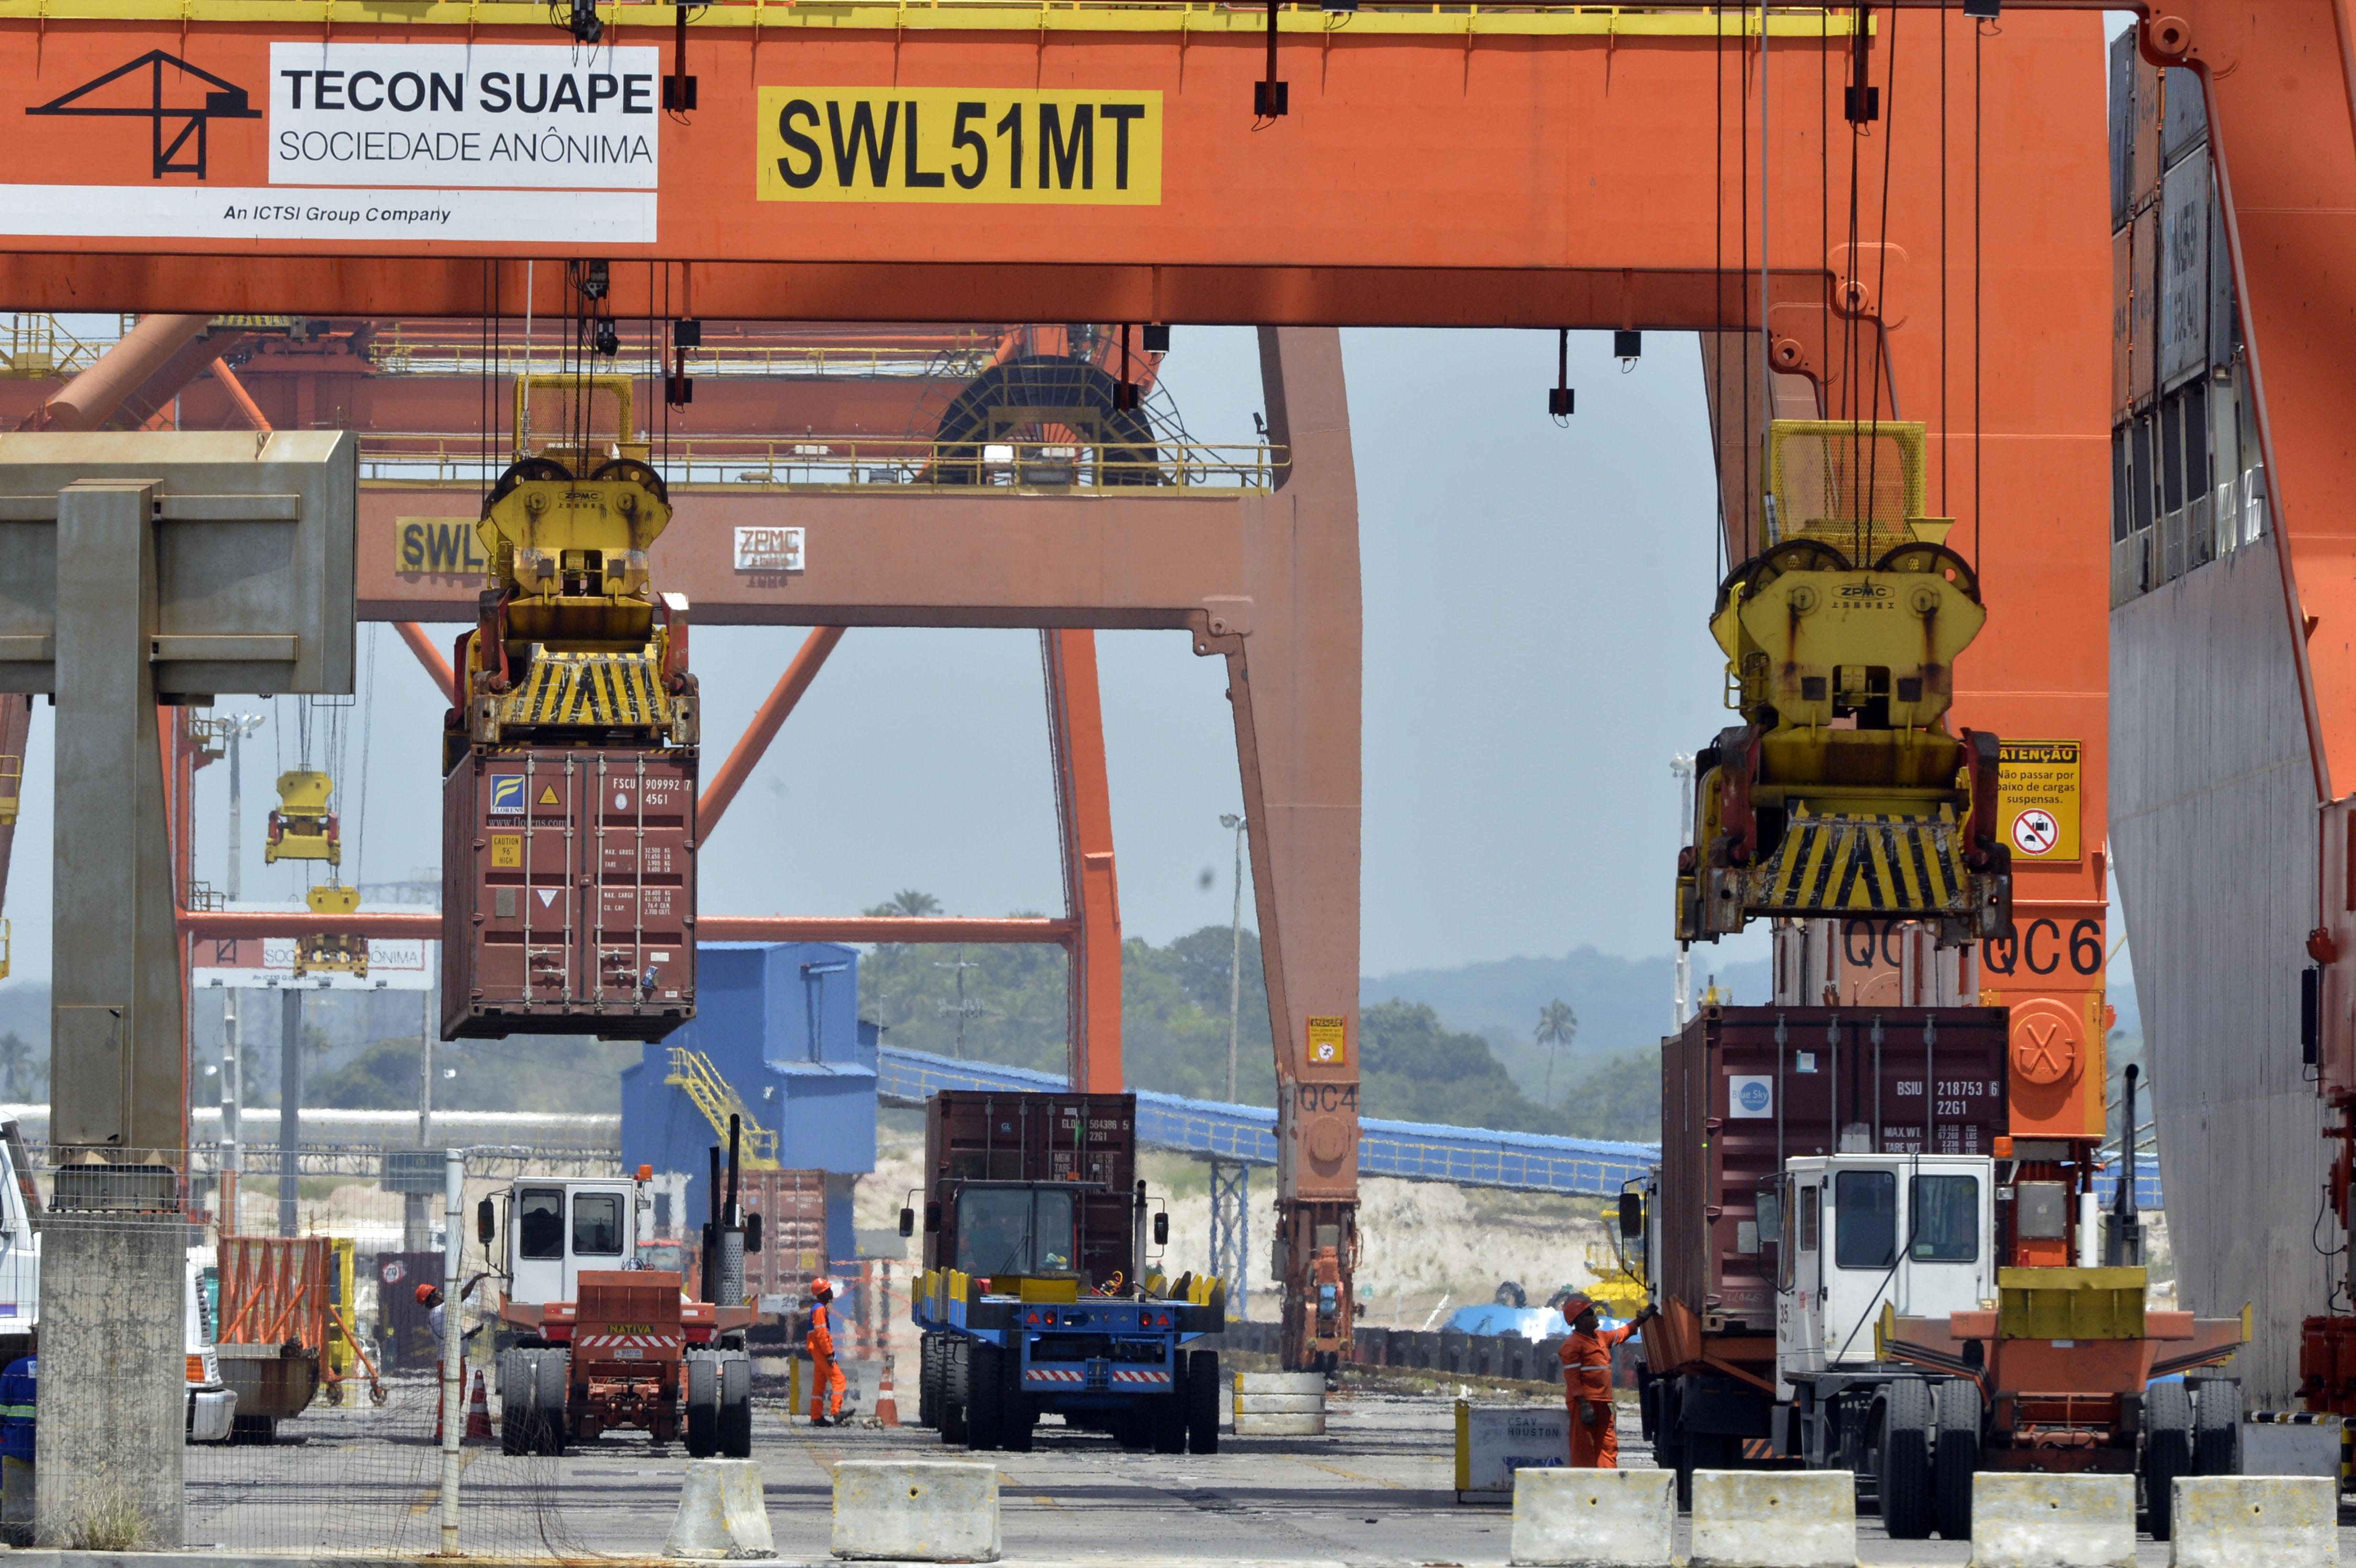 Operação no Porto de Suape. Terminal de containers.
Suape (PE) 15.10.2014 - Foto: José Paulo Lacerda *** Local Caption *** Porto de Suape